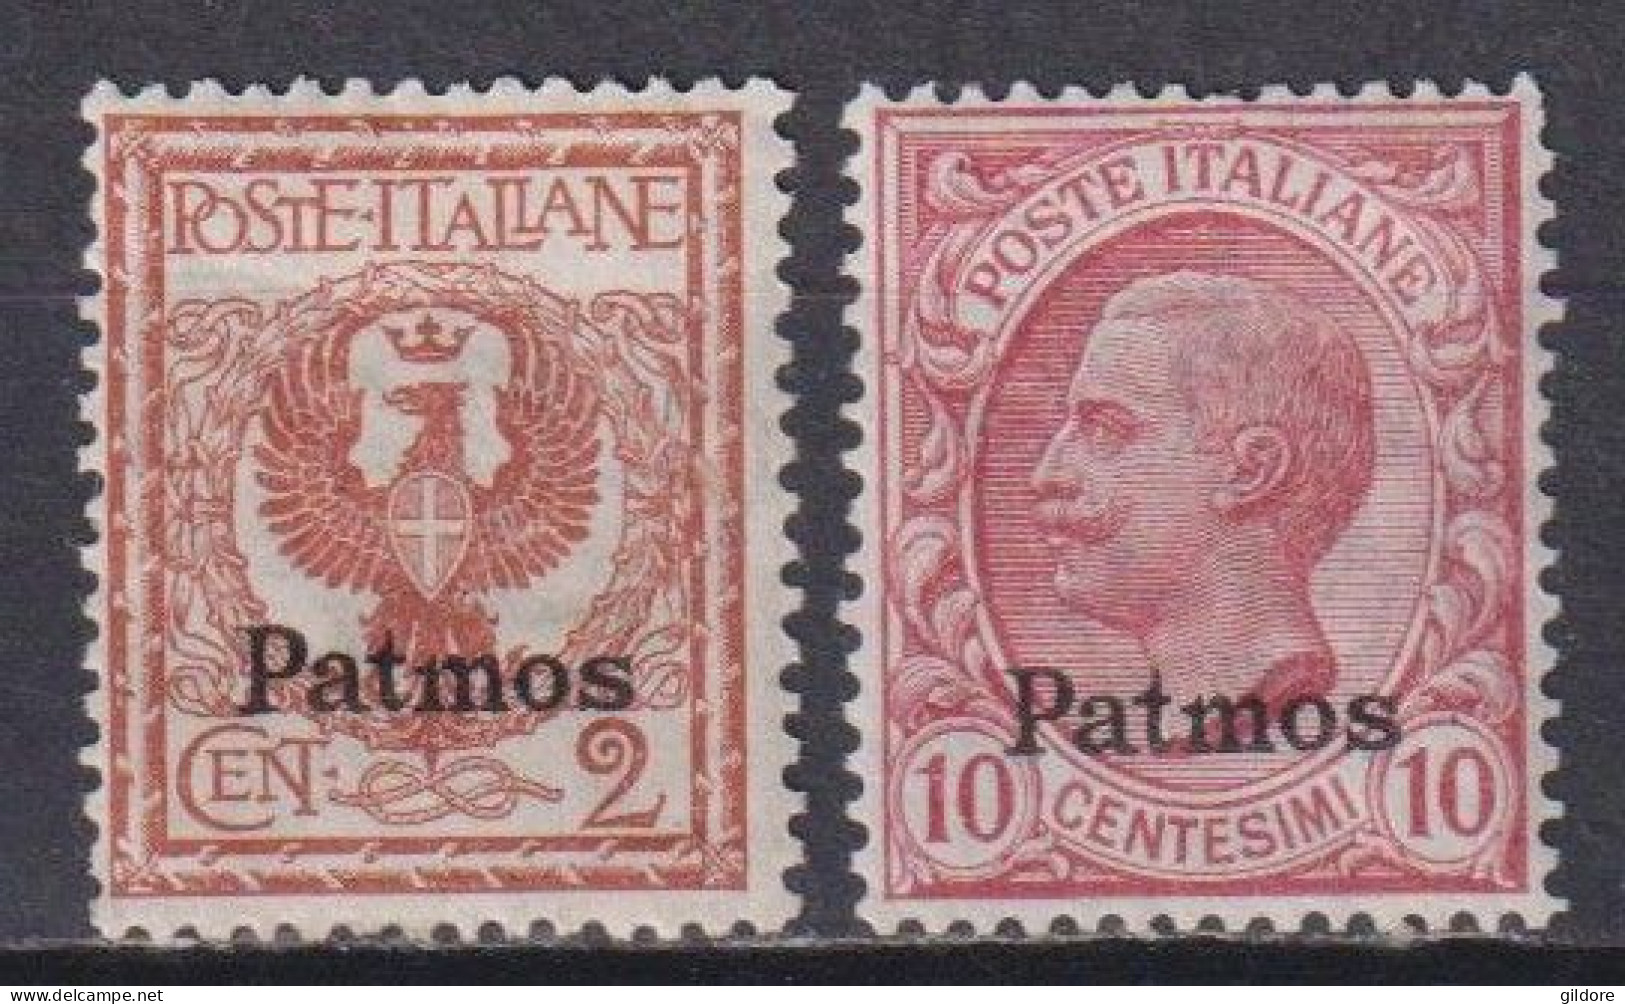 ITALIA REGNO 1912 EGEO PATMOS 2 Cent + 10 Cent MNH - Aegean (Patmo)